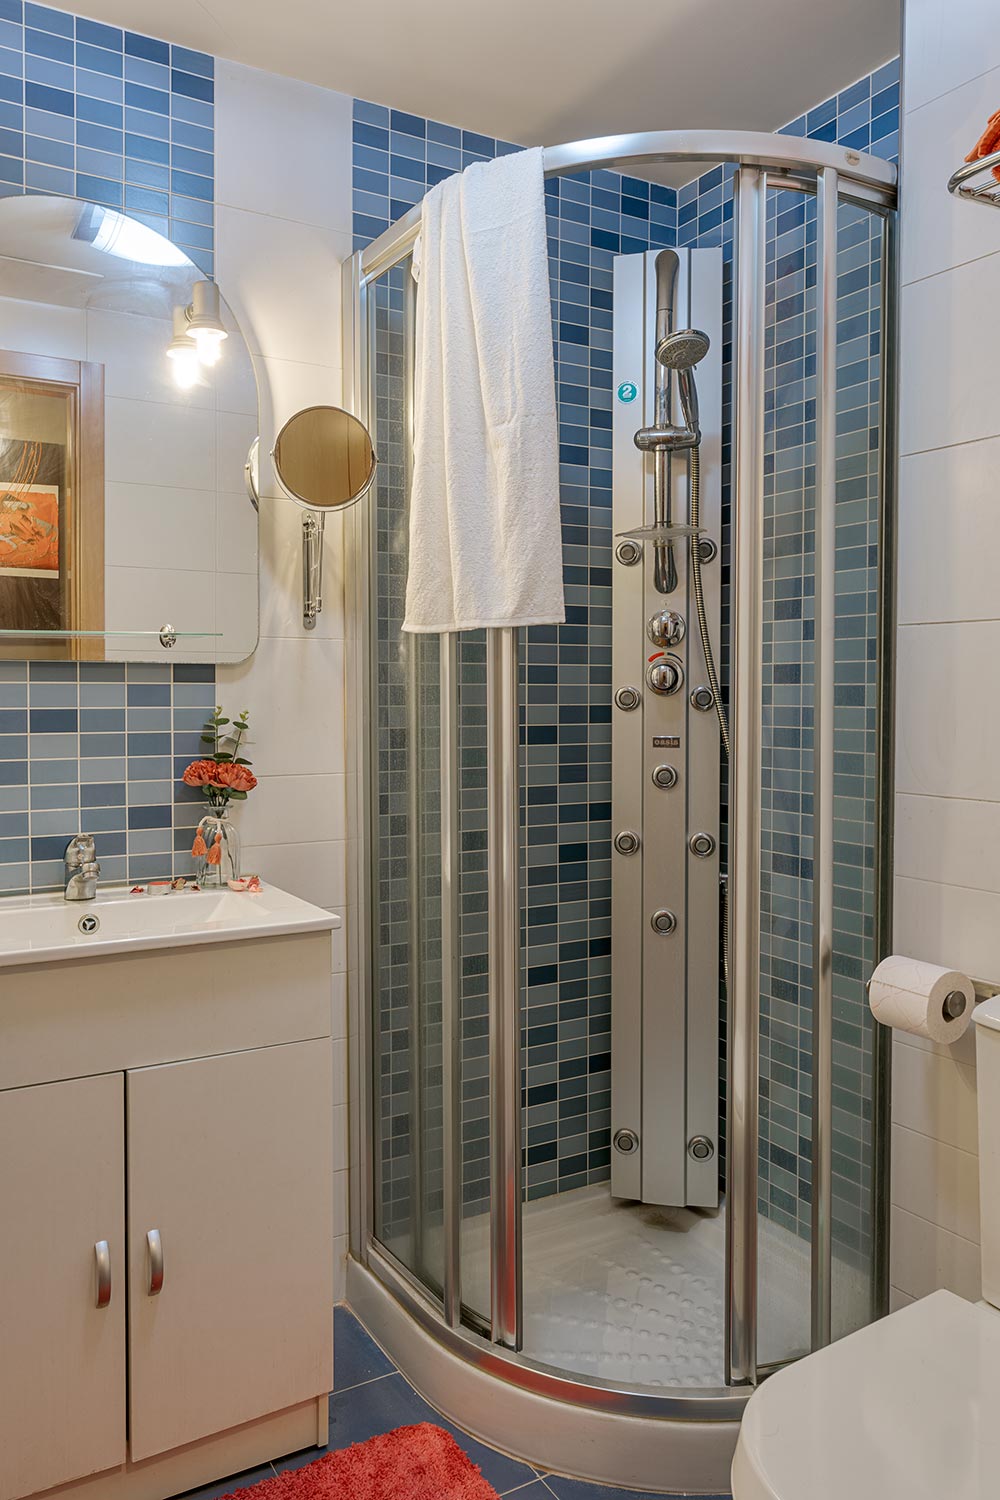 Baño moderno y luminoso con azulejos en tonos azules, ducha de esquina con puertas curvas de vidrio, lavabo blanco con gabinete y espejo circular, en Sada